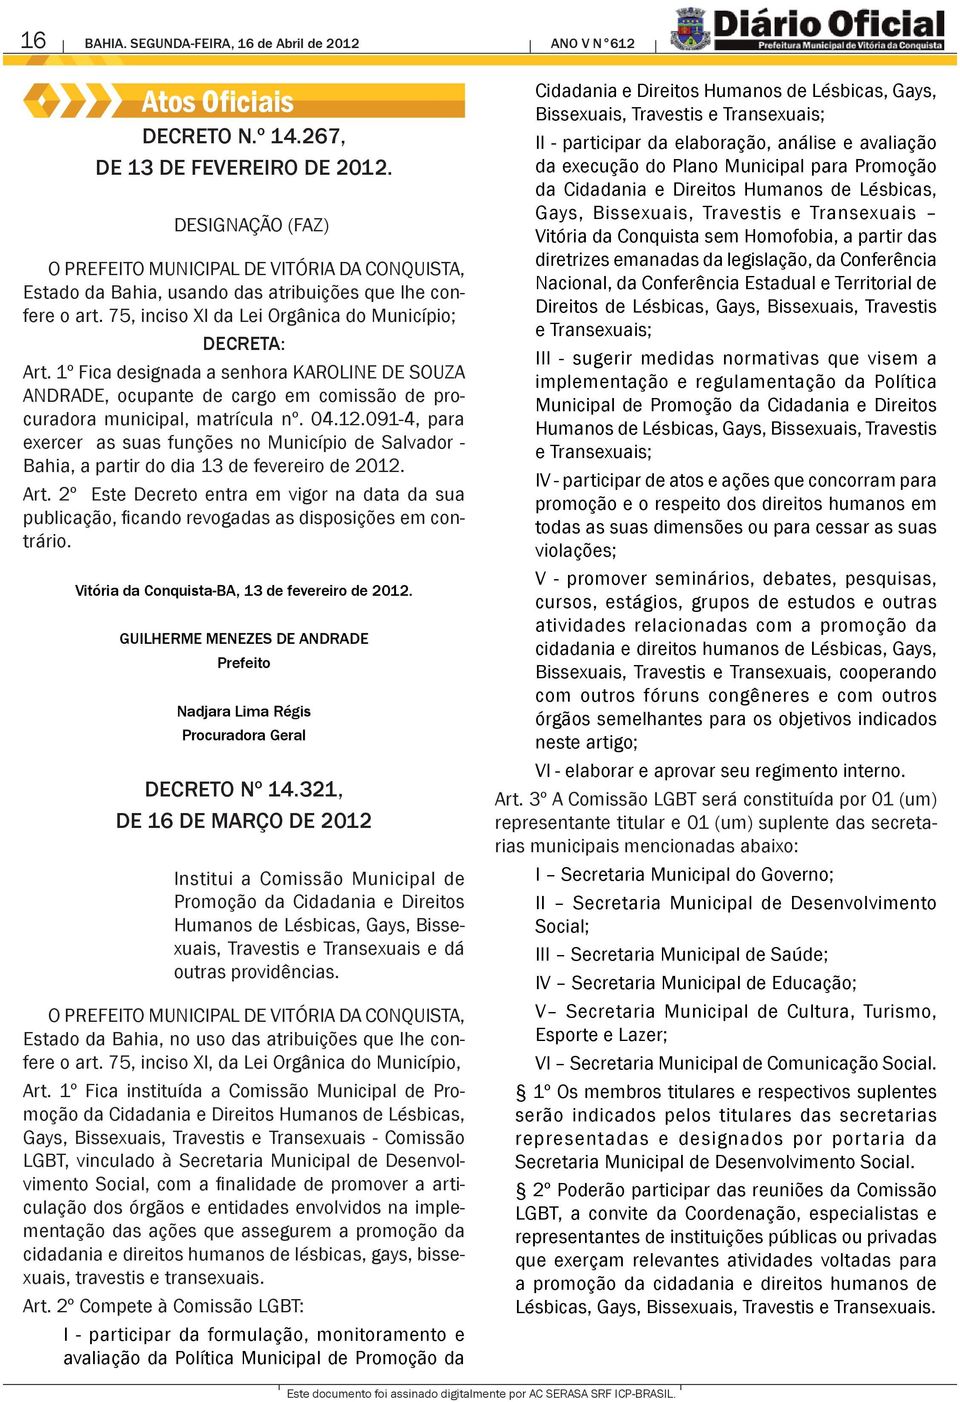 1º Fica designada a senhora KAROLINE DE SOUZA ANDRADE, ocupante de cargo em comissão de procuradora municipal, matrícula nº. 04.12.